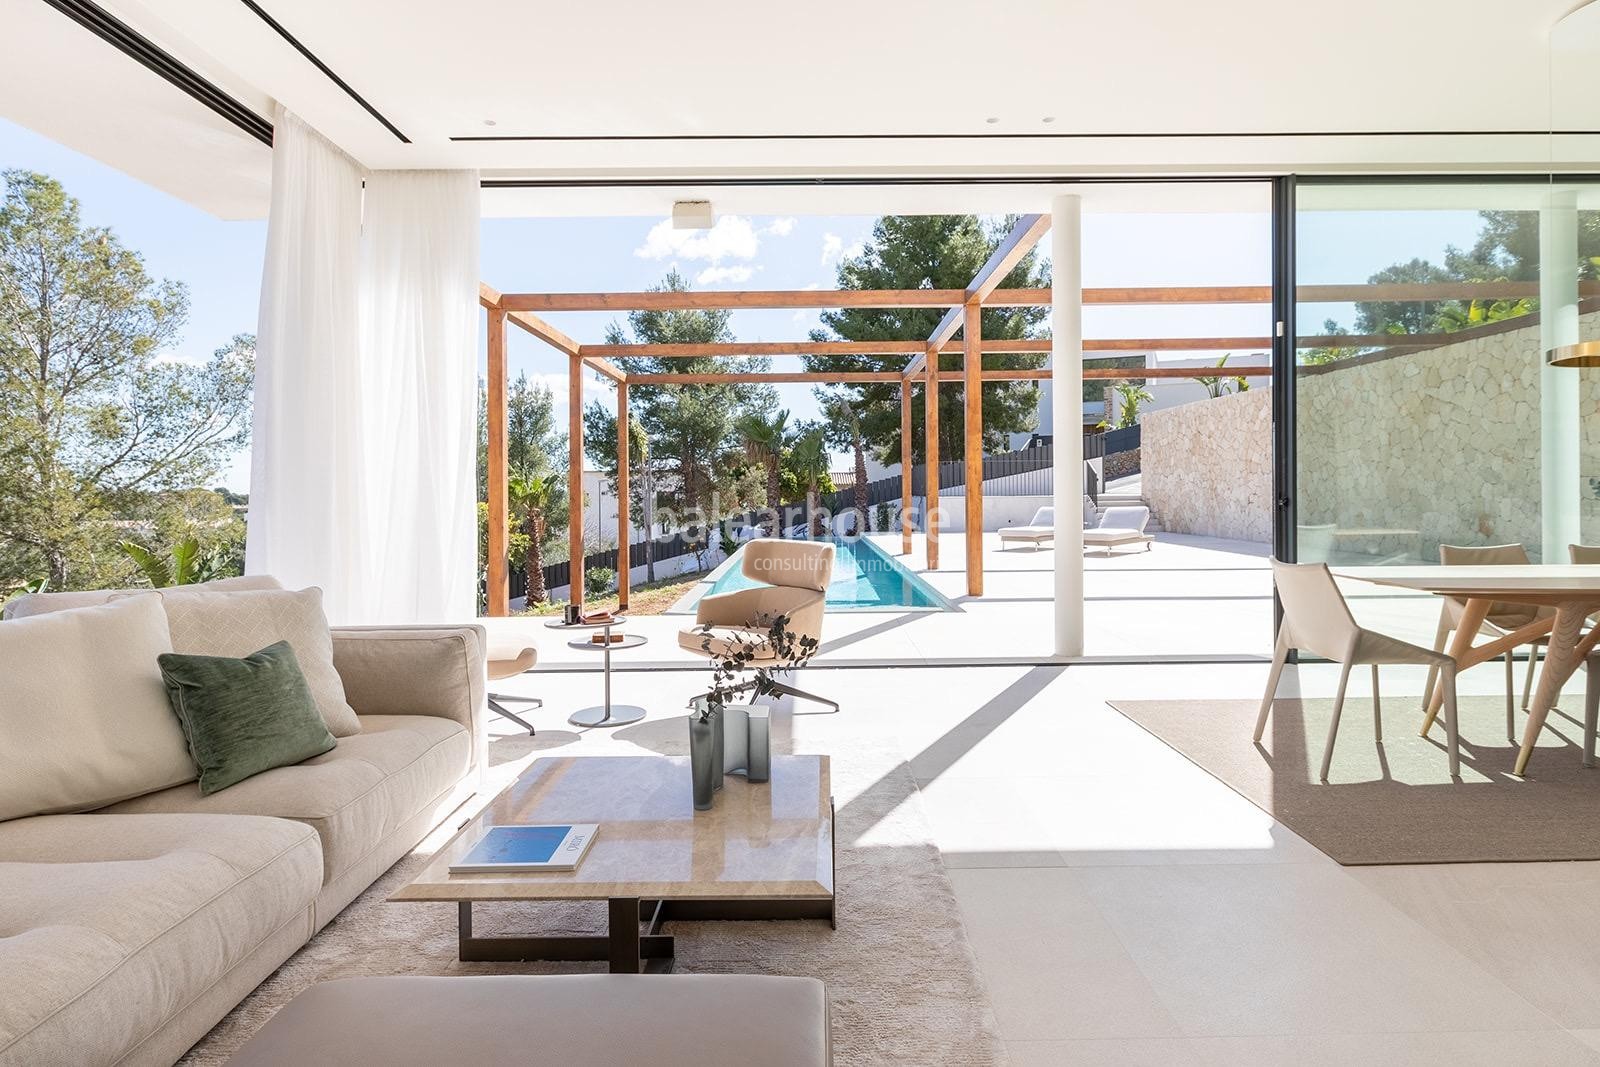 Spektakuläre neue Designervilla mit hoher Qualität und fantastischem Blick auf die Hügel von Palma.